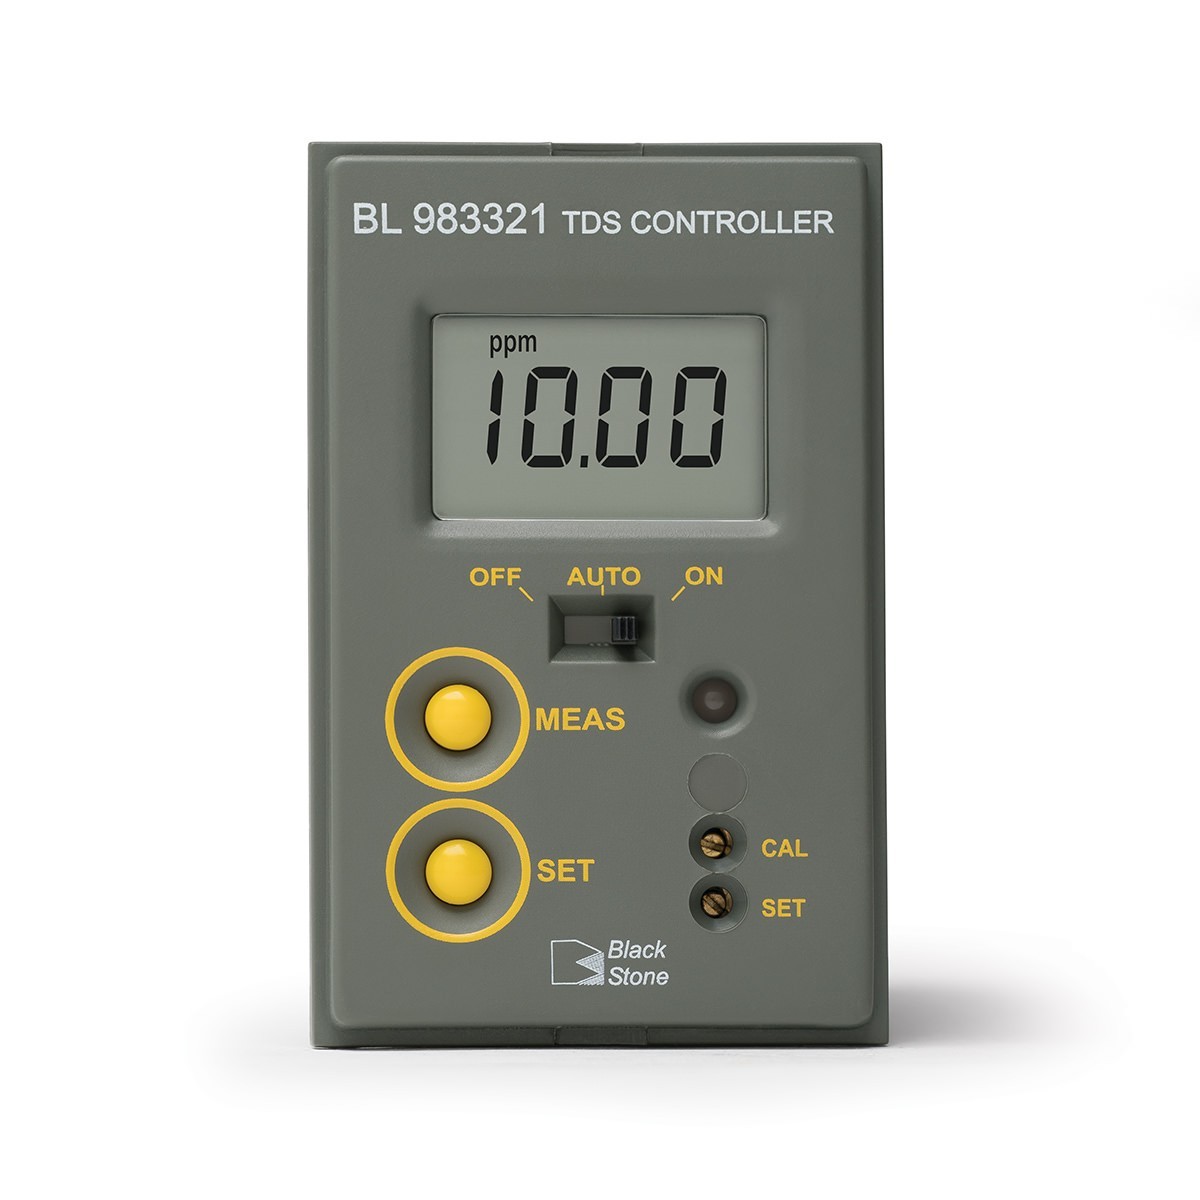 Bộ kiểm soát Mini TDS (0.00 - 19.99 mg/L) BL983321 Hanna